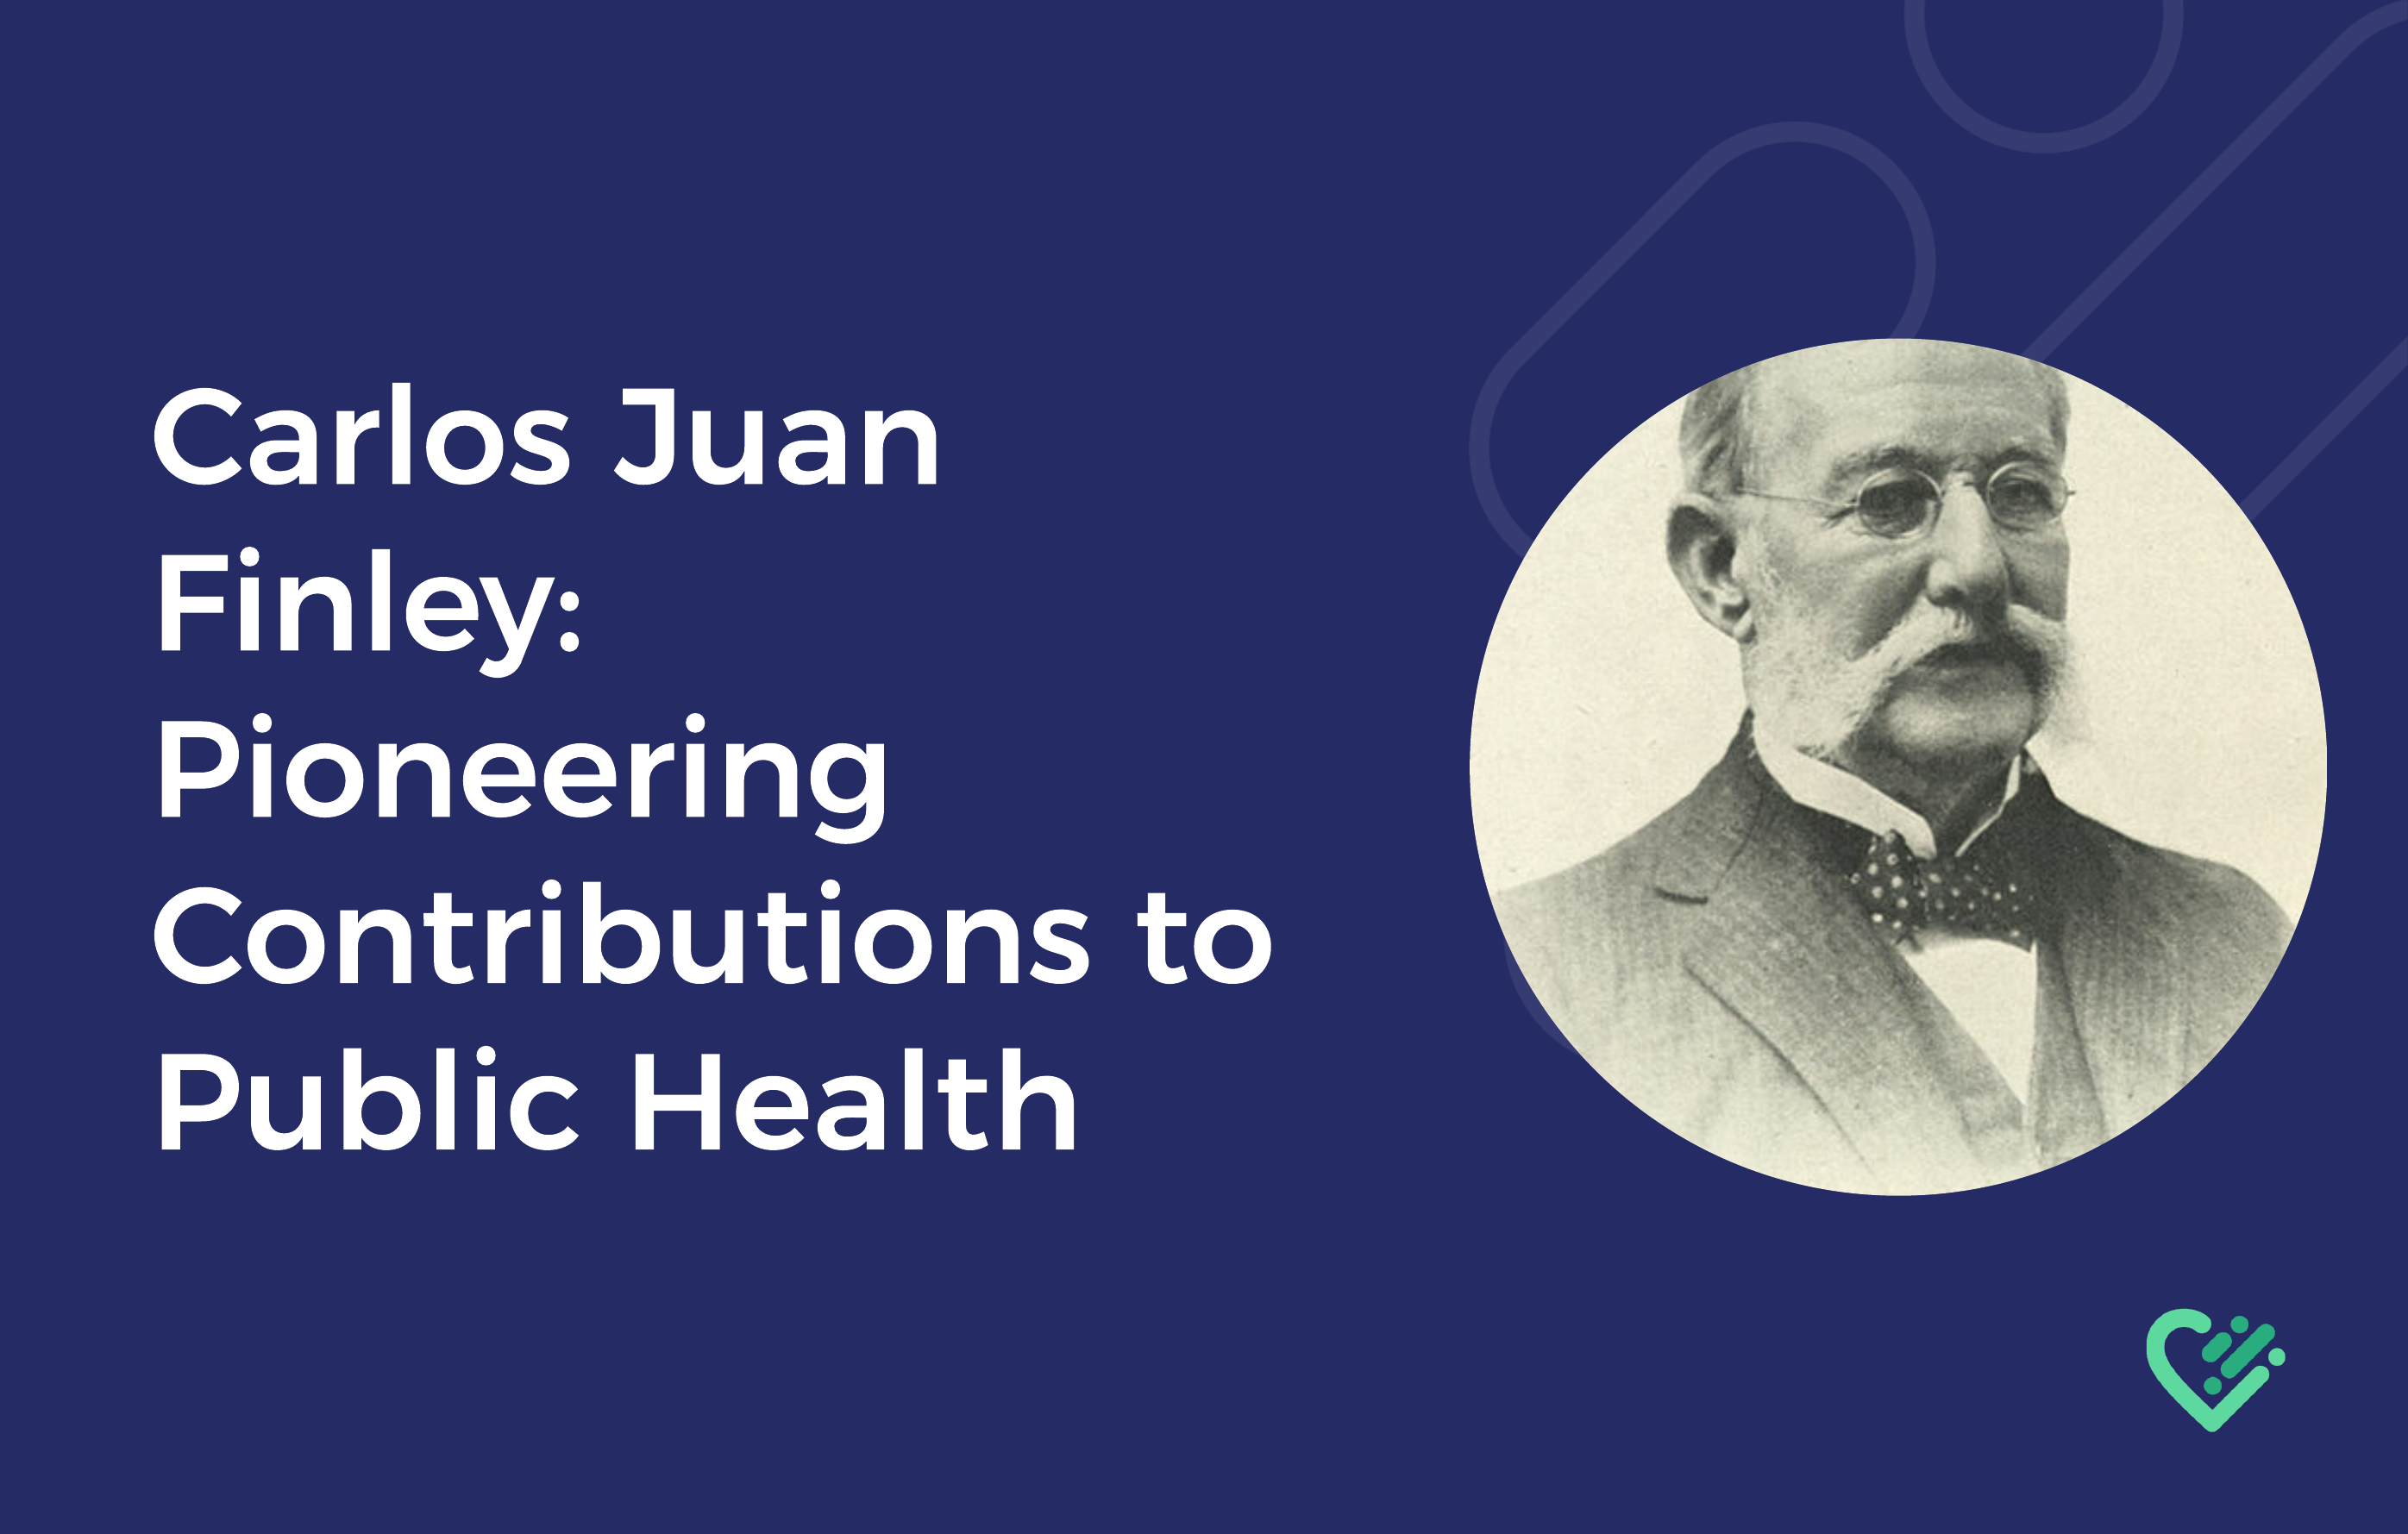 Carlos Juan Finley: Pioneering Contributions to Public Health